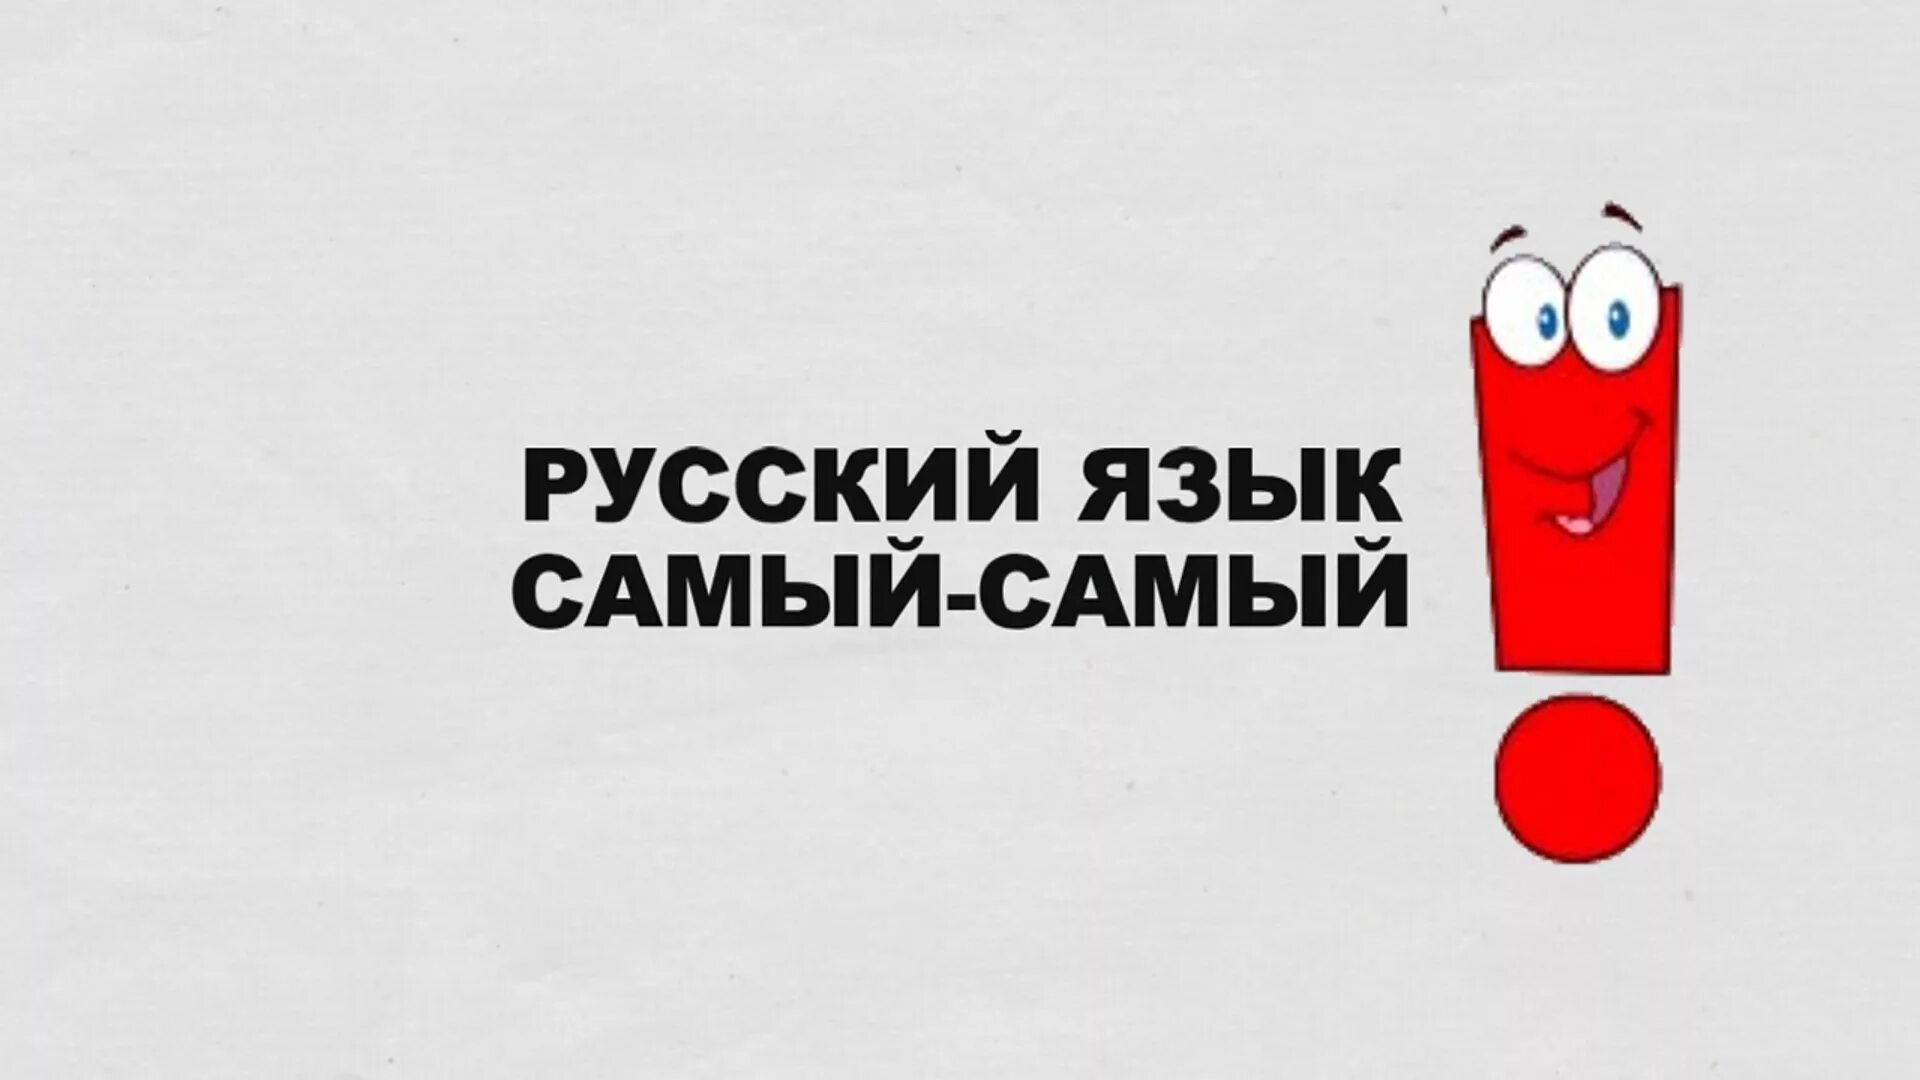 Включи самую лучшую русскую. Русский язык. Социальная реклама русского языка. Русский язык лучший. Я русский.